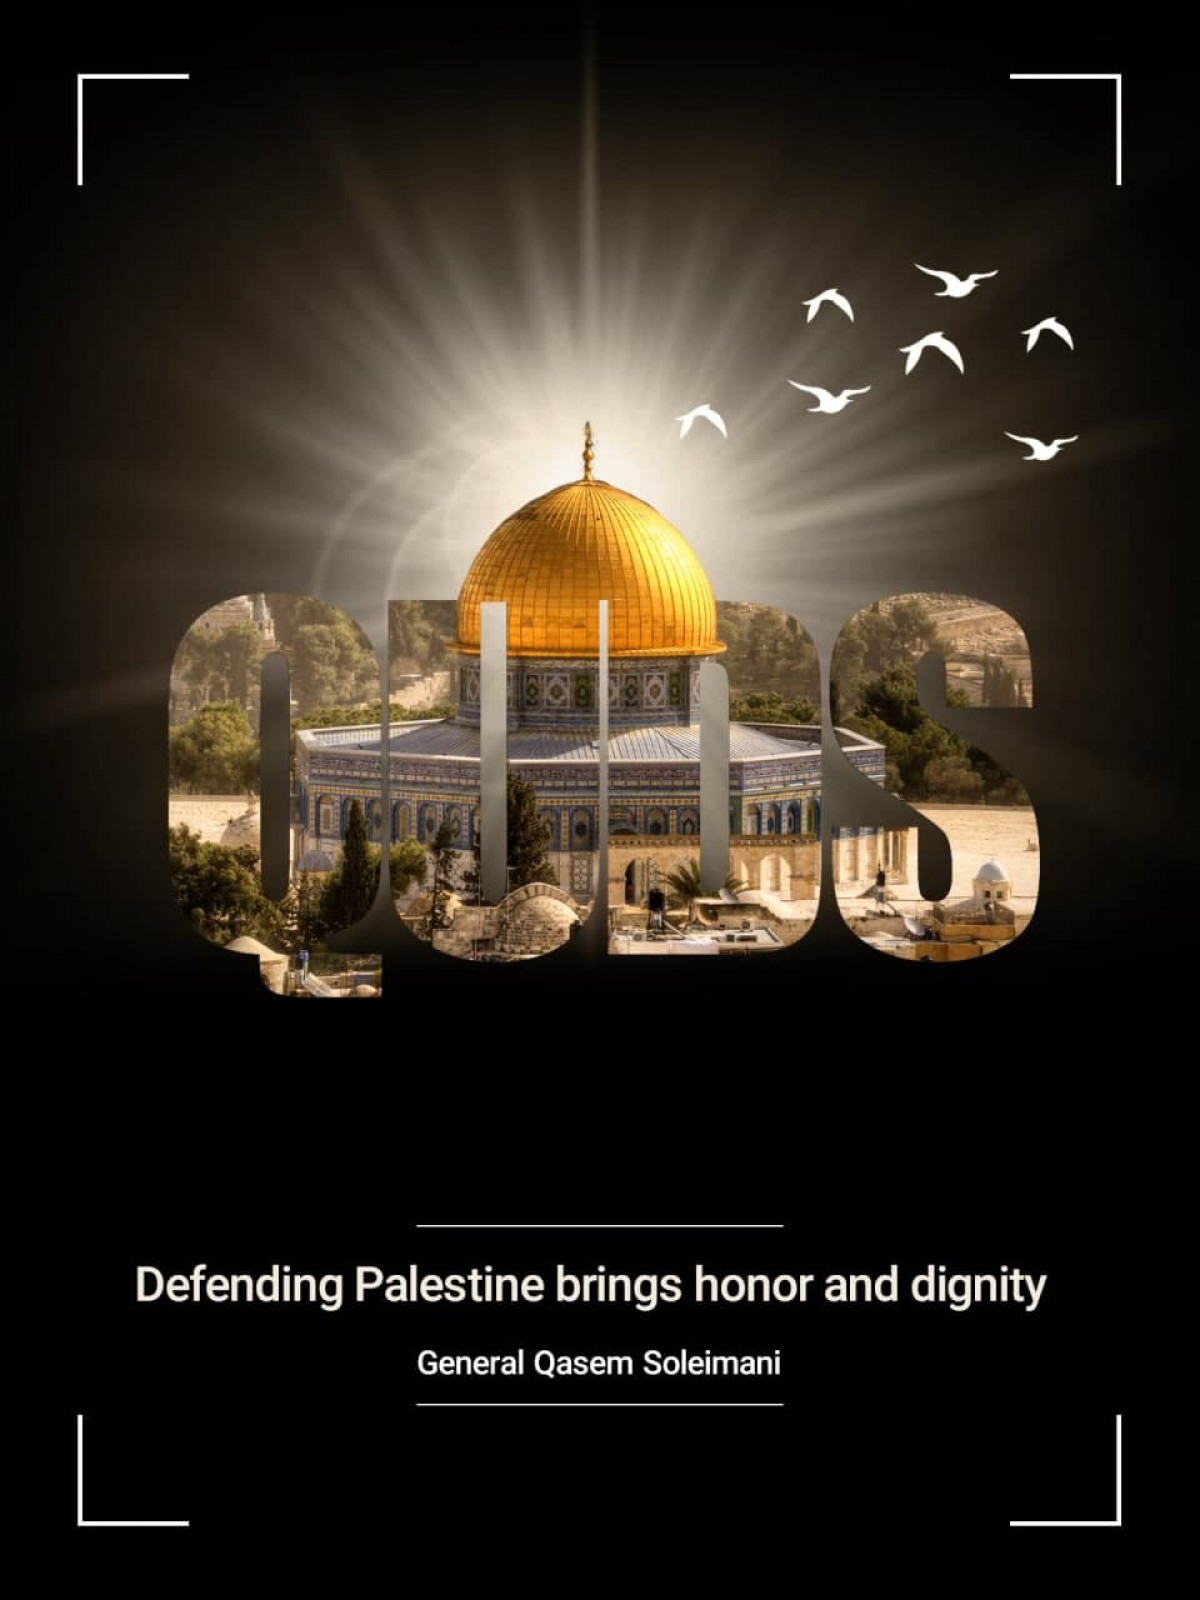 General Qasem Soleimani: Defending Palestine brings honor and dignity